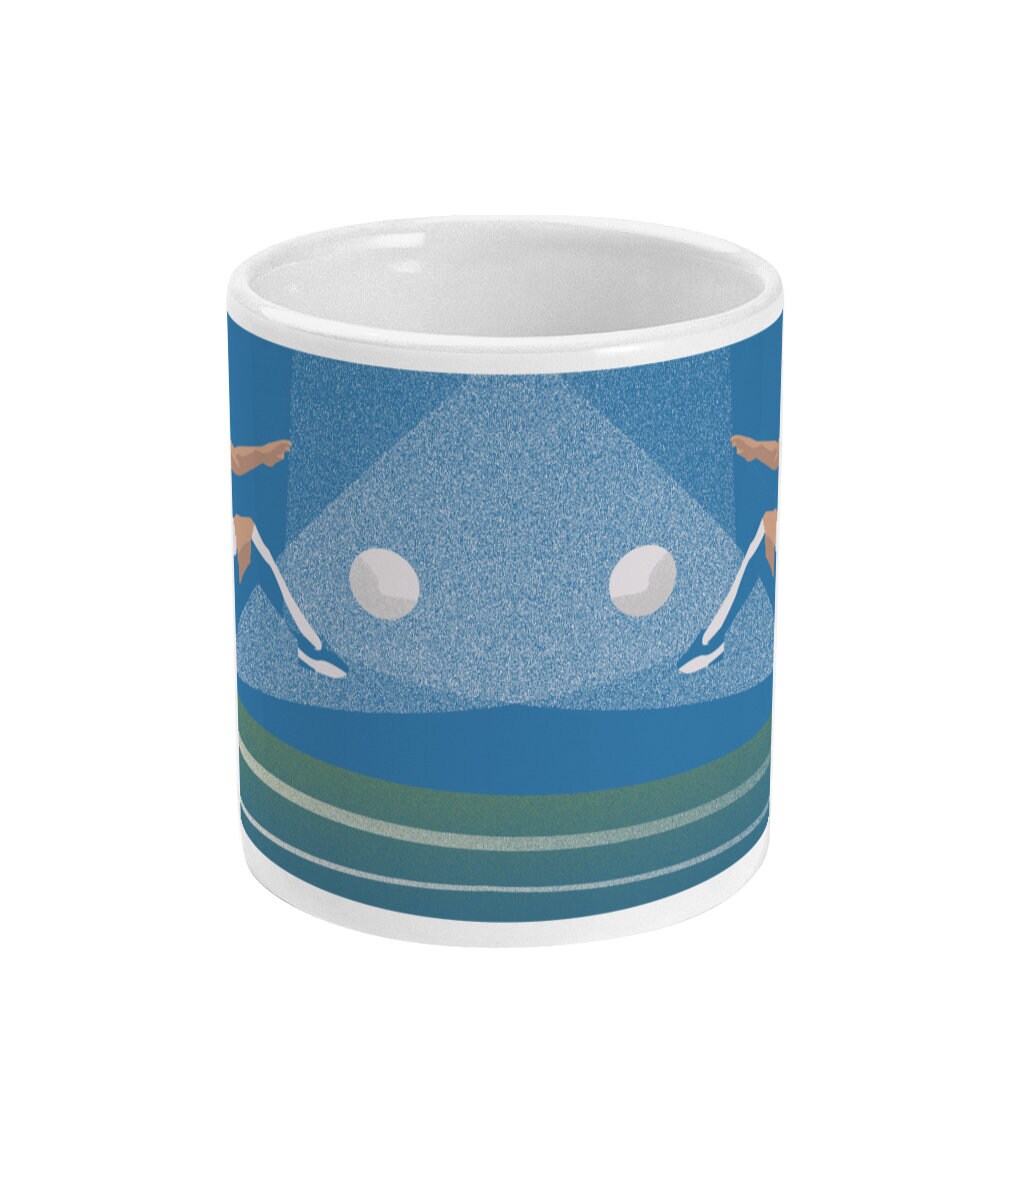 Cup or mug "Football player" - Customizable